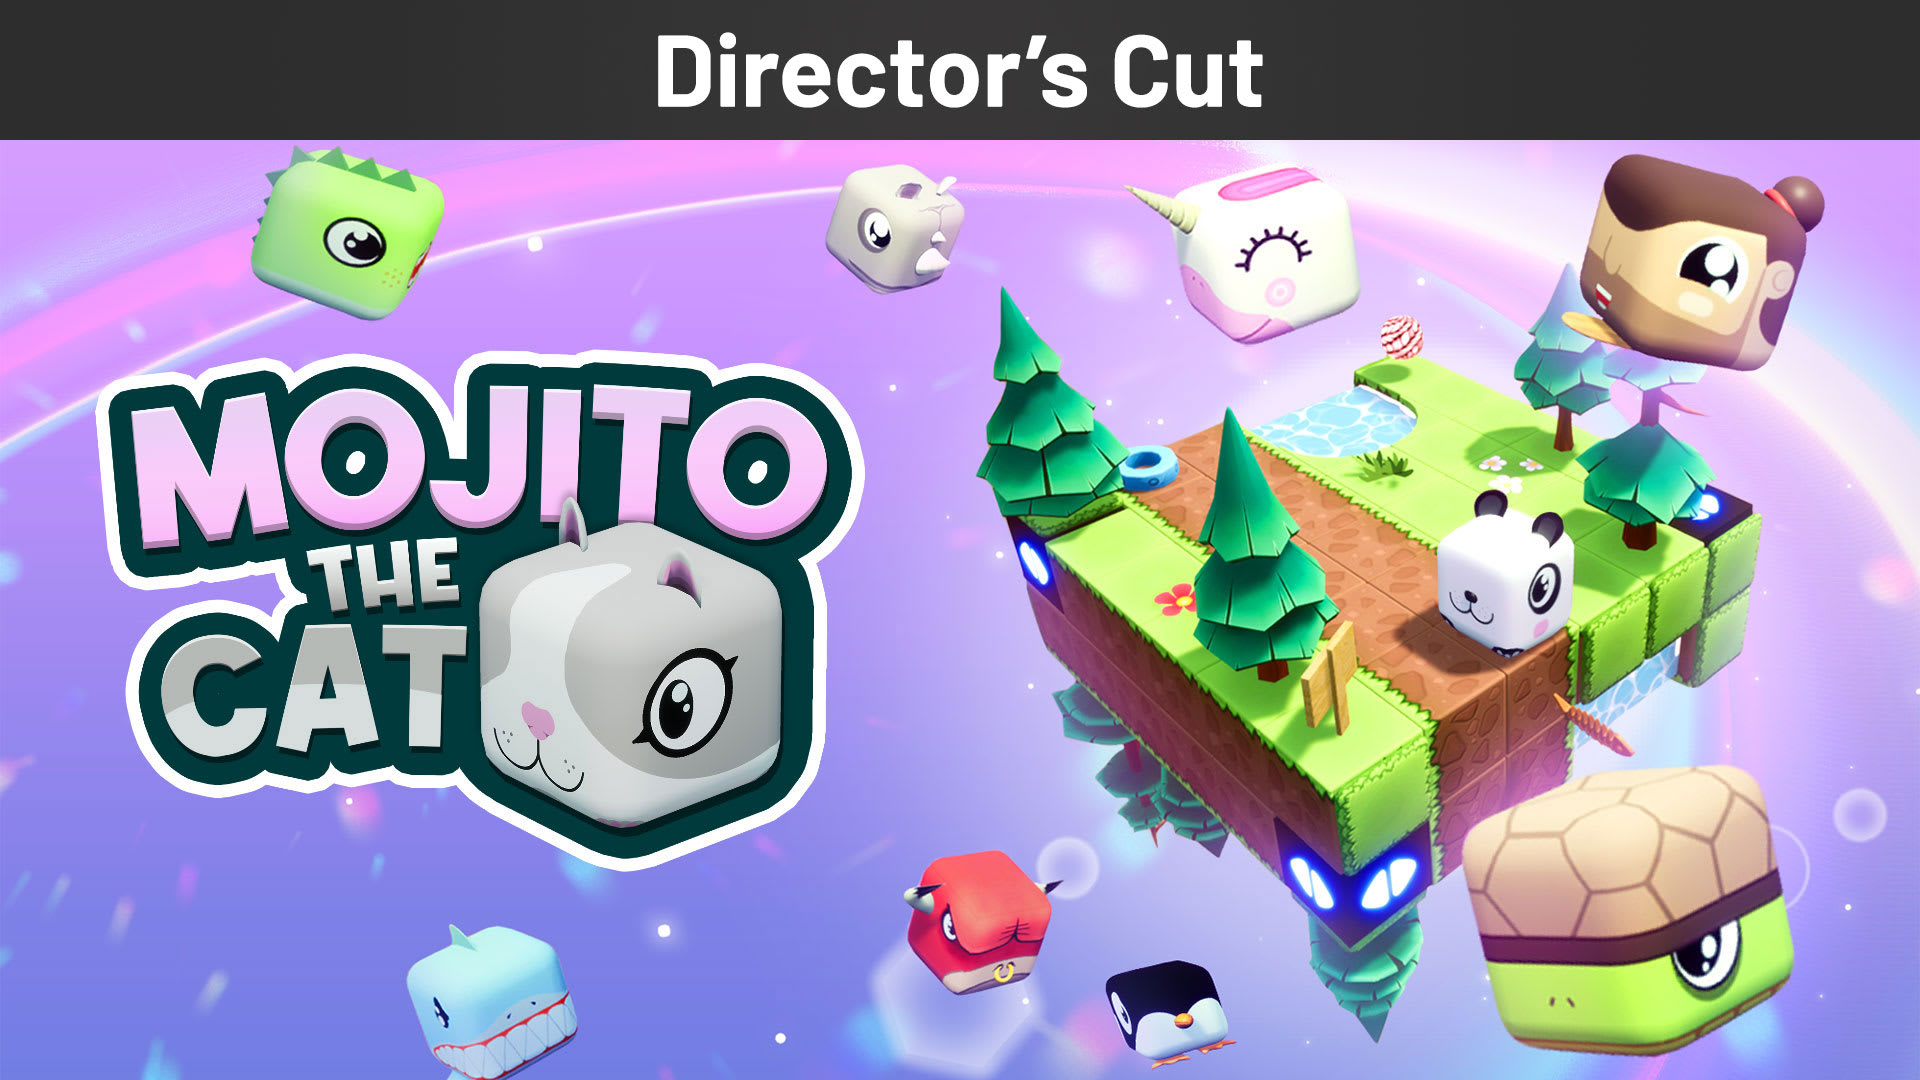 Mojito the Cat Director's Cut